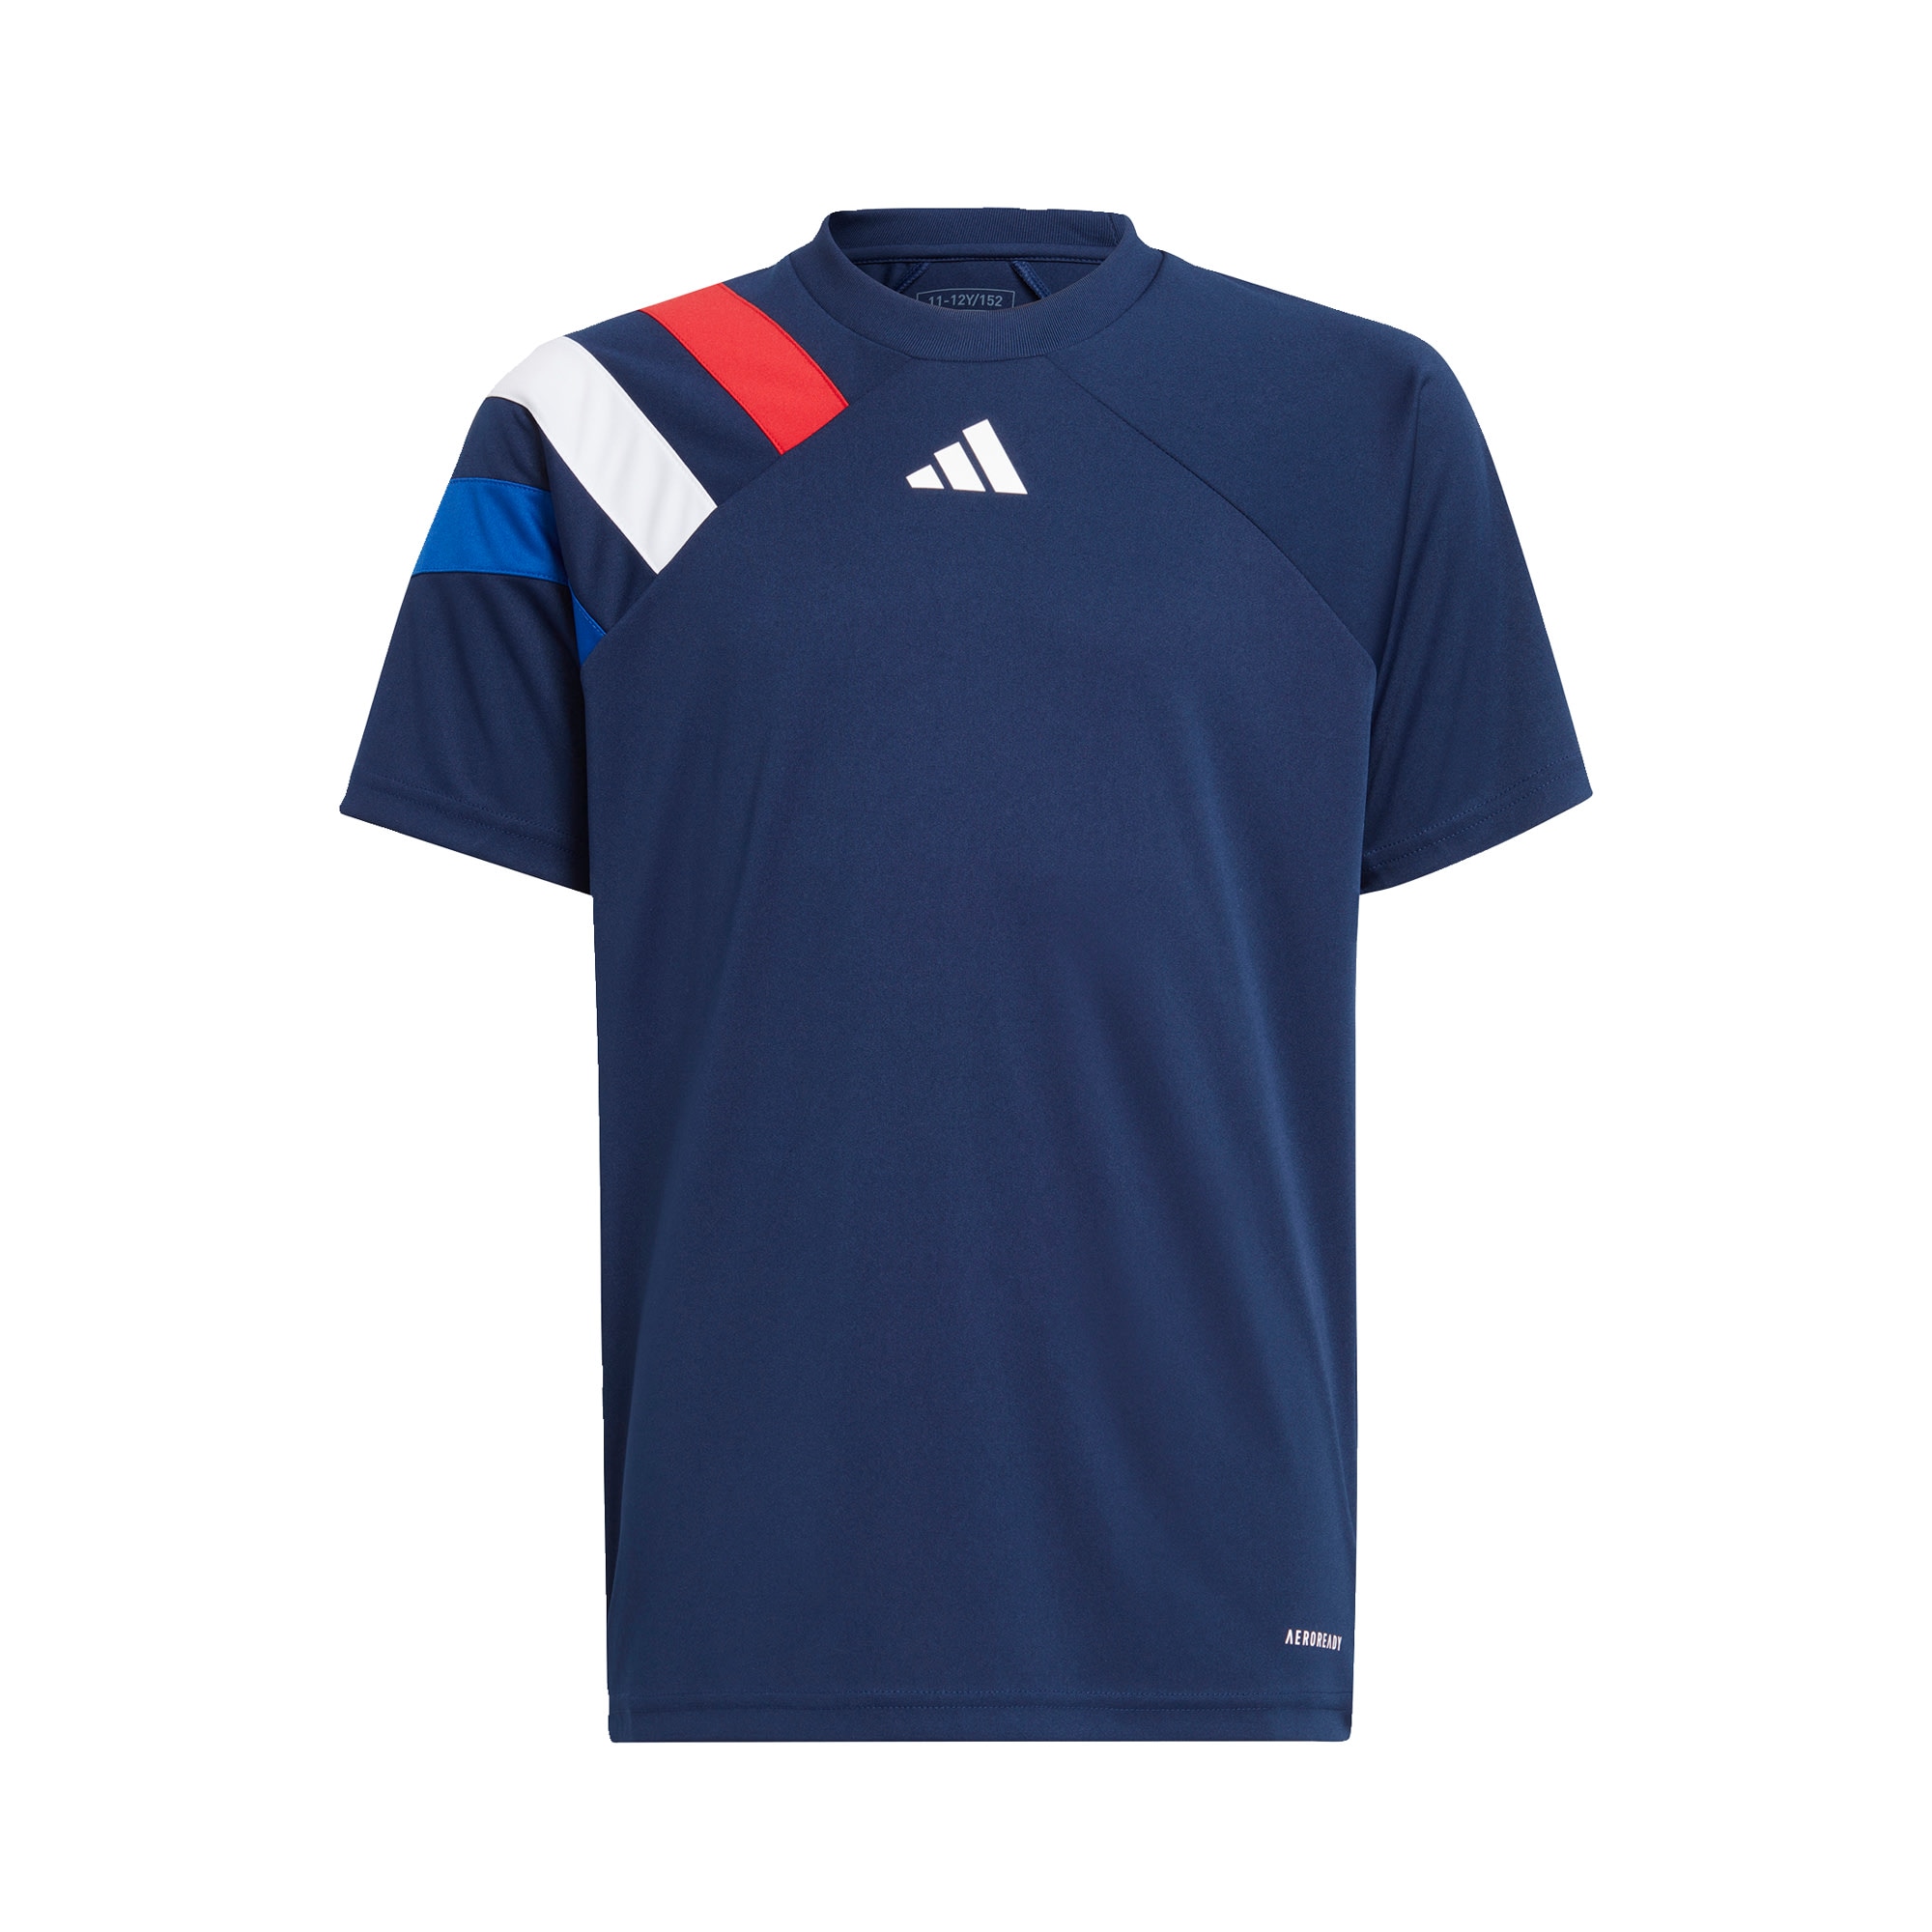 ADIDAS PERFORMANCE Sportiniai marškinėliai 'Fortore 23' tamsiai mėlyna / raudona / balta